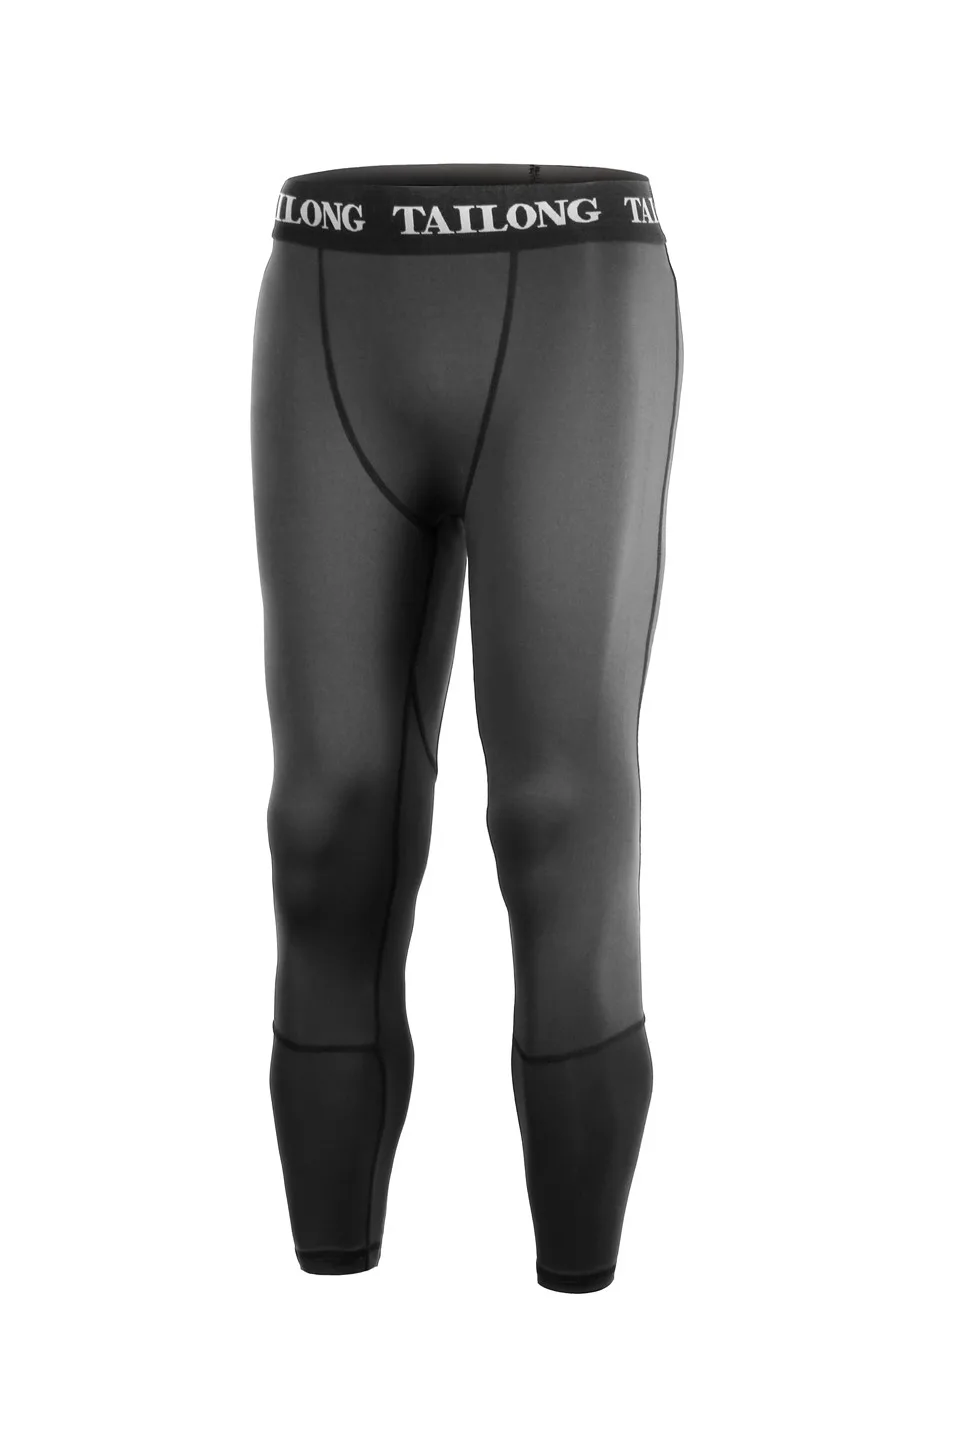 Junlan Мужские Брюки Компрессионные облегающие брюки для похудения брюки для тренировок Леггинсы эластичные шорты